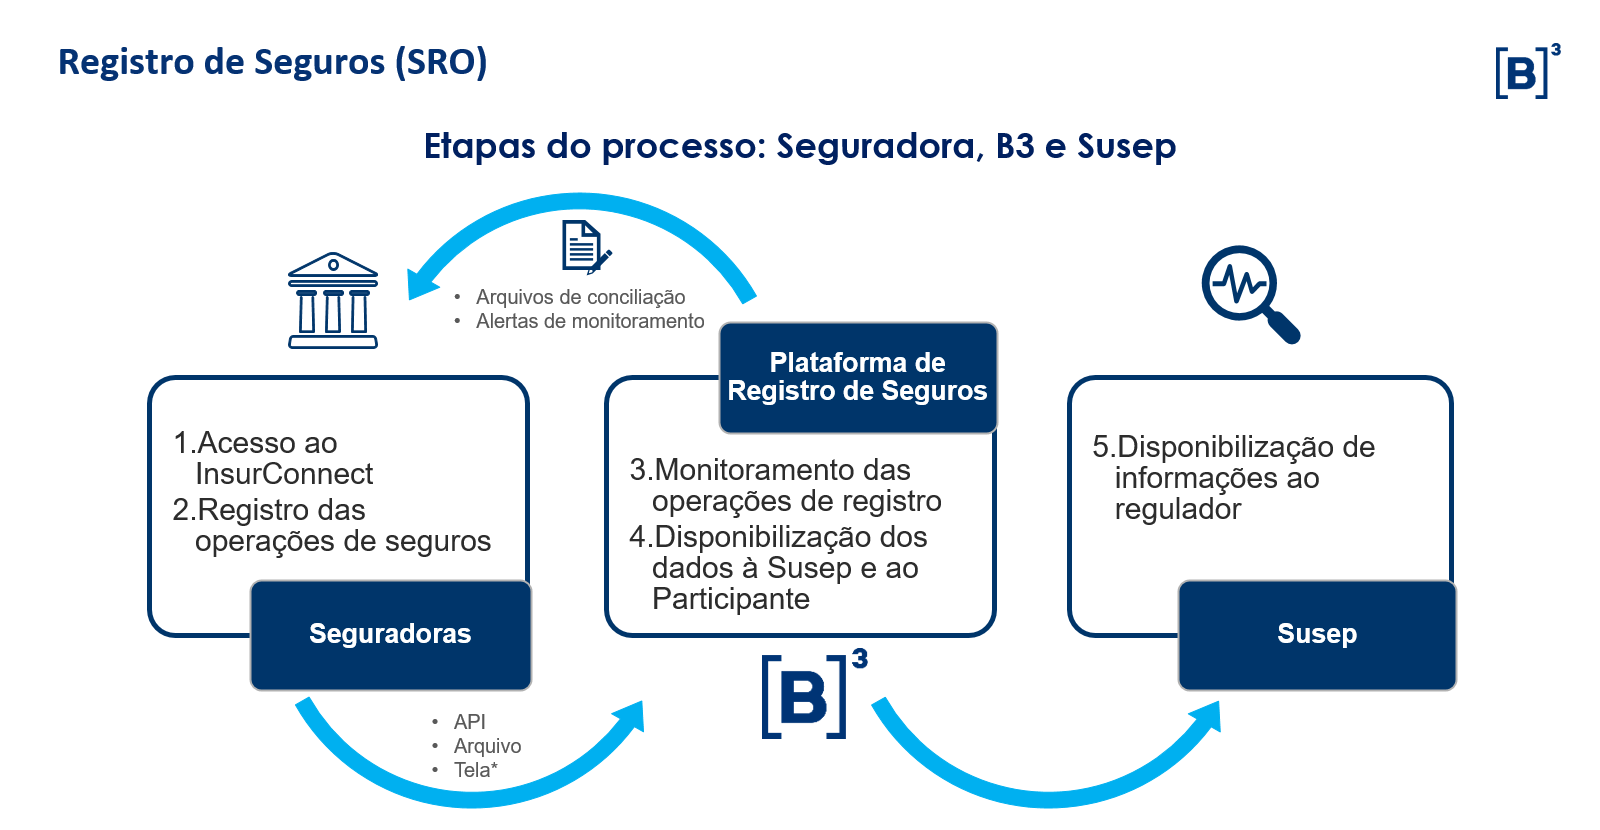 Confira as etapas do processo de registro de seguros em: Etapas do processo: Seguradora, B3 e Susep